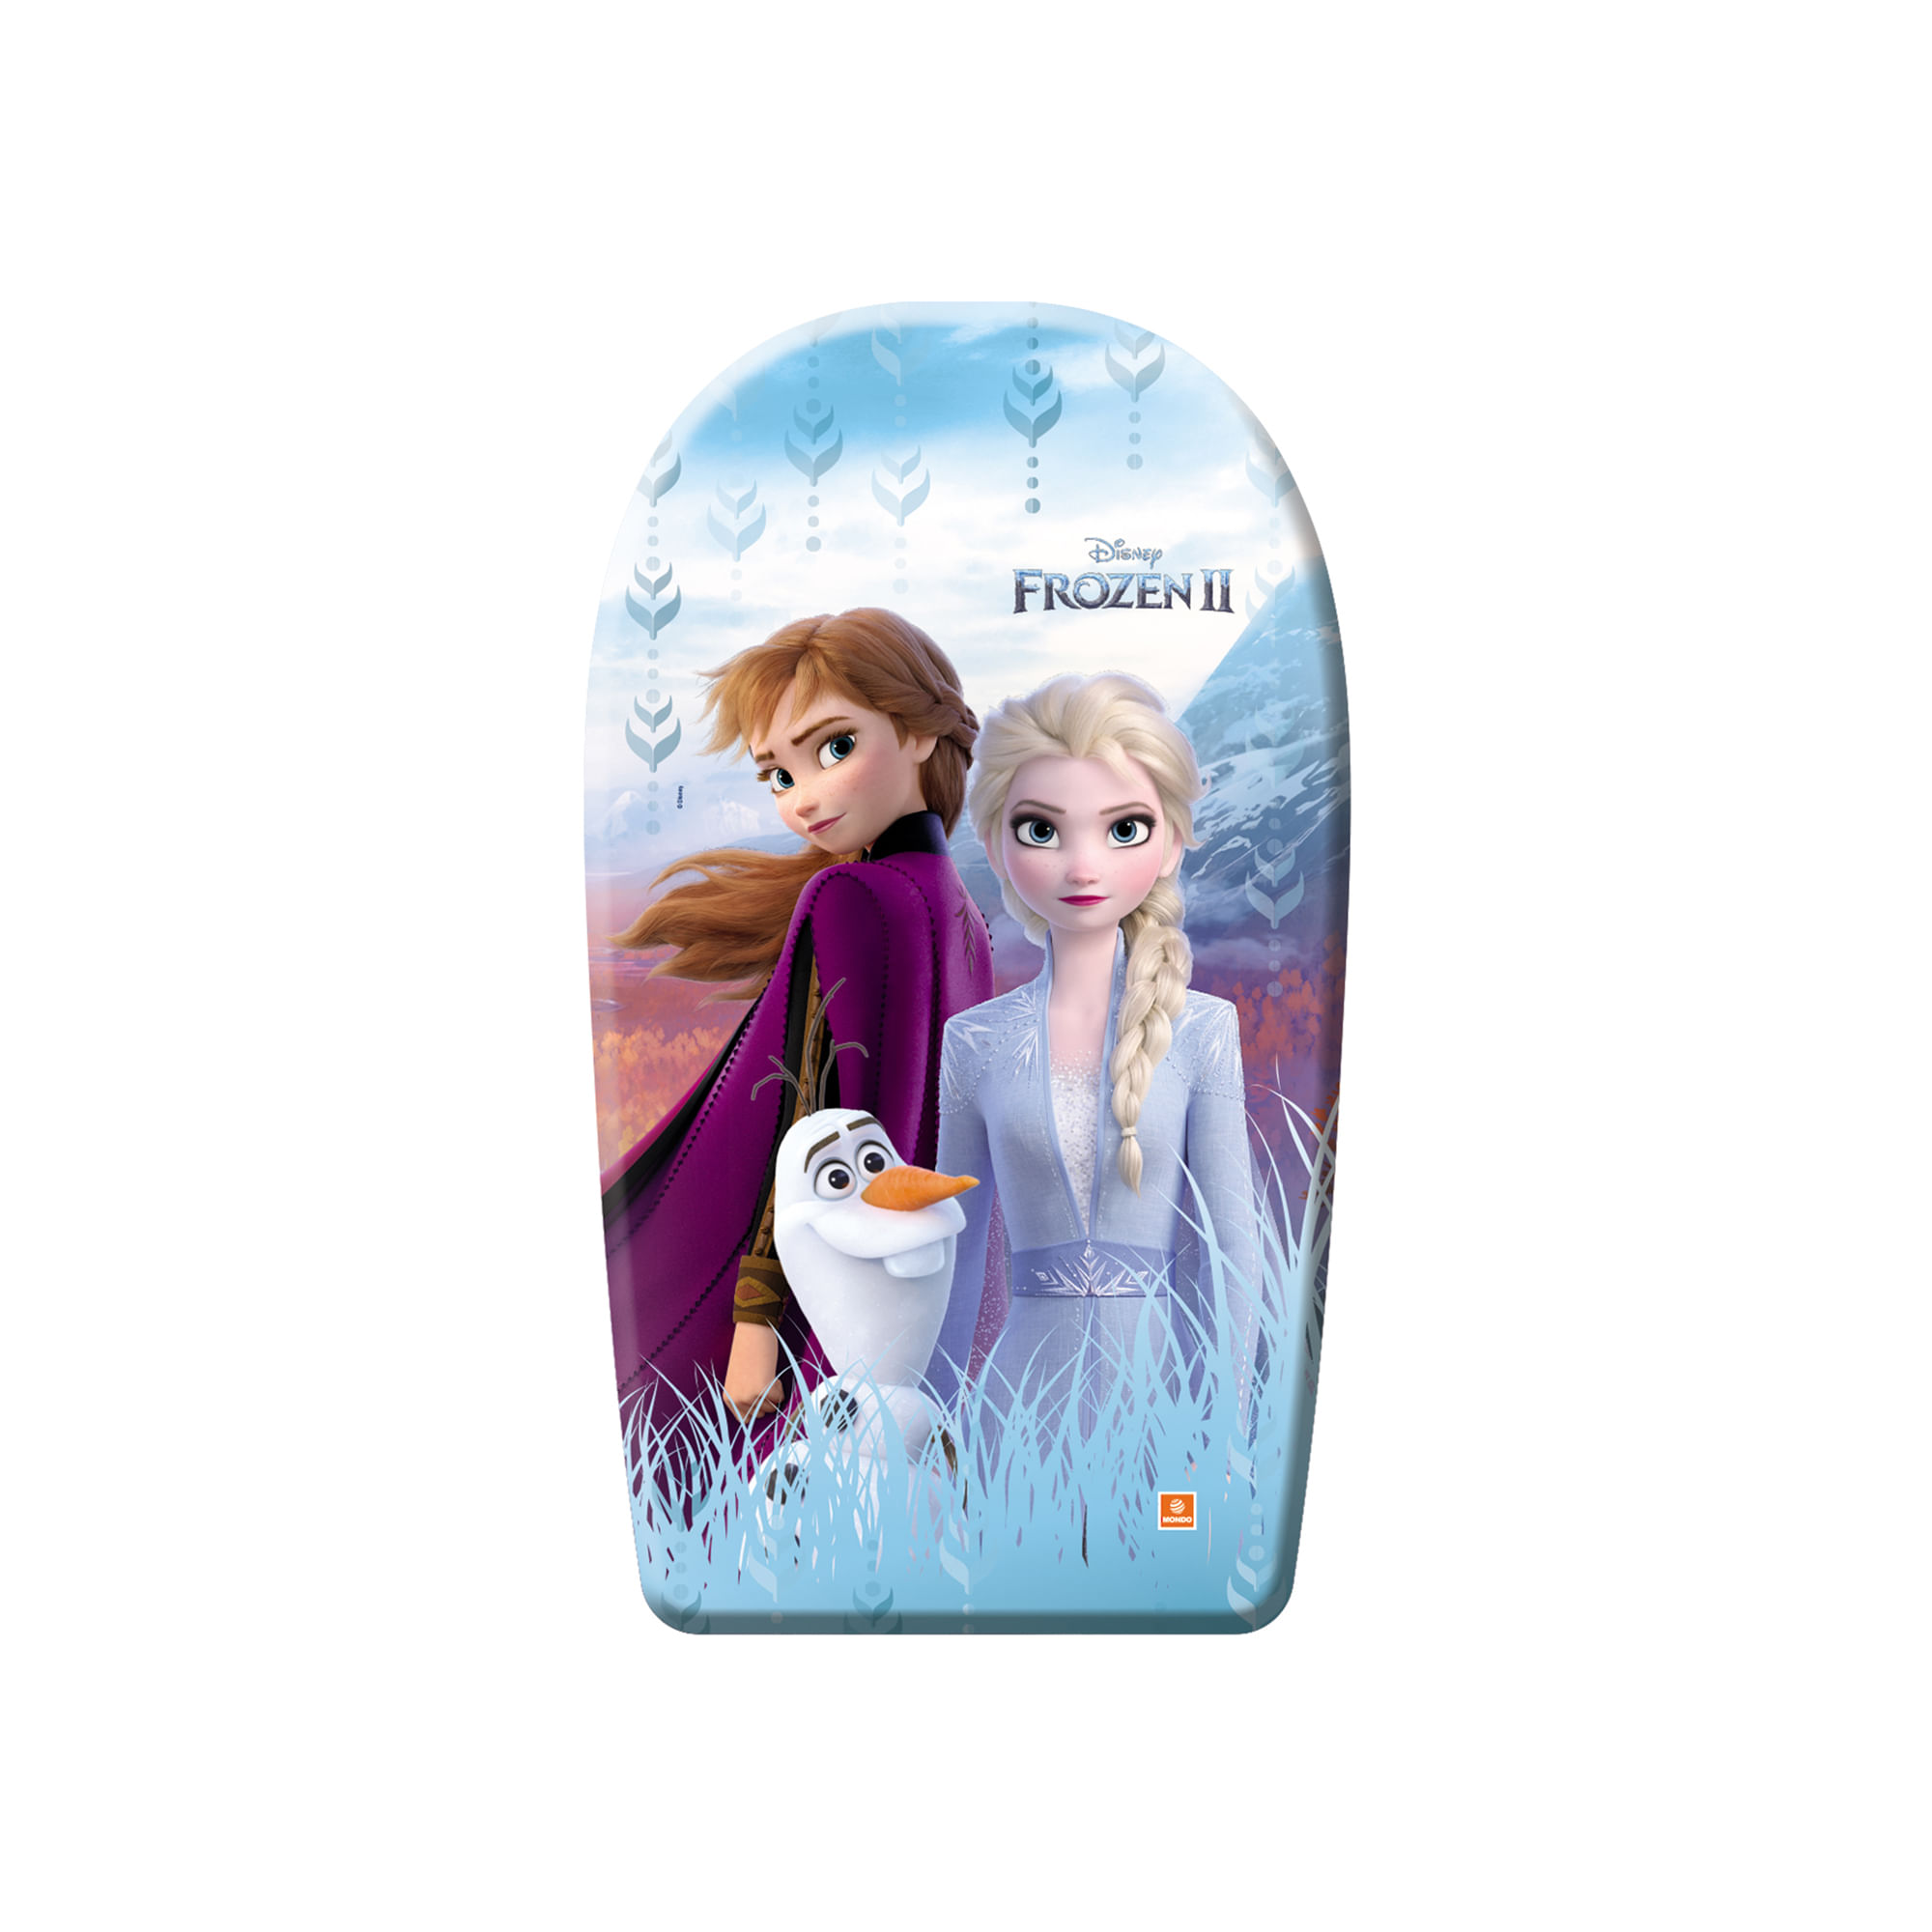 Placa inot Mondo - Disney Frozen II, 84 cm